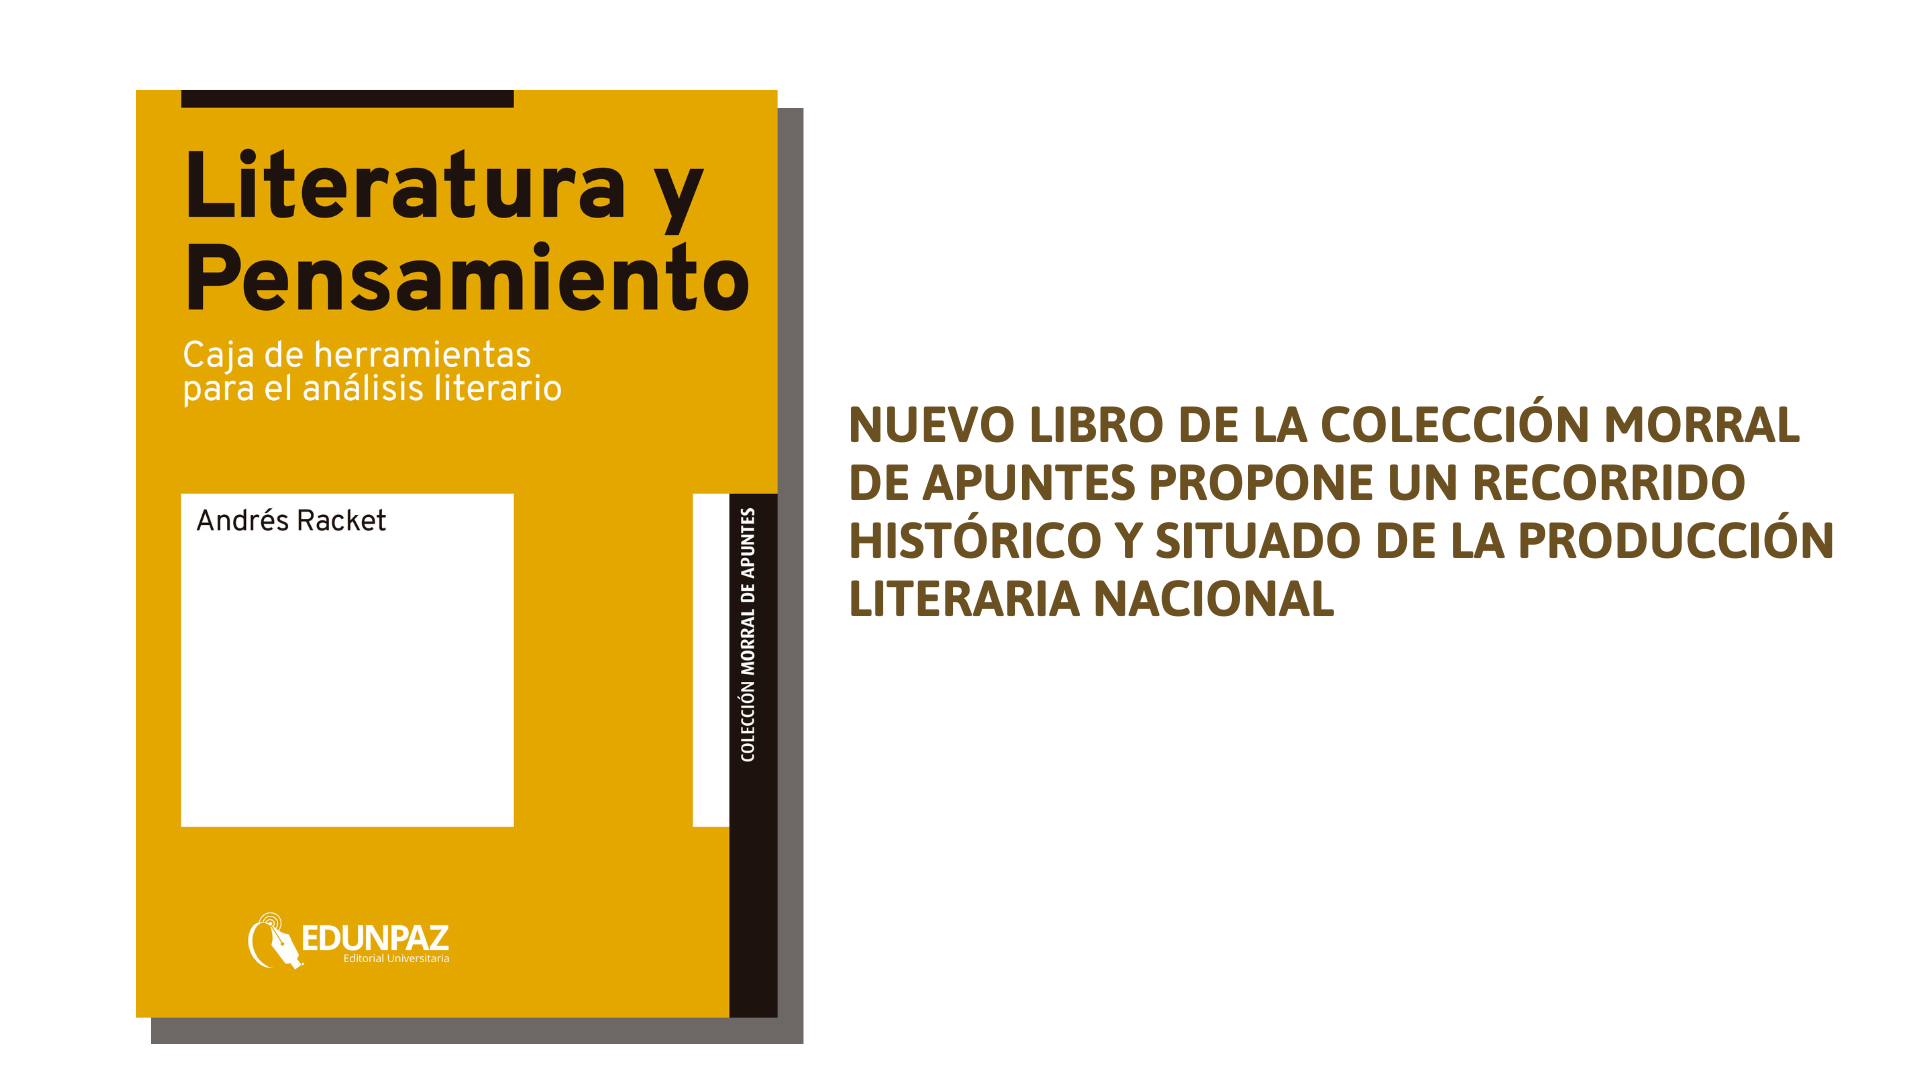 NUEVO LIBRO DE LA COLECCIÓN MORRAL DE APUNTES PROPONE UN RECORRIDO HISTÓRICO Y SITUADO DE LA PRODUCCIÓN LITERARIA NACIONAL